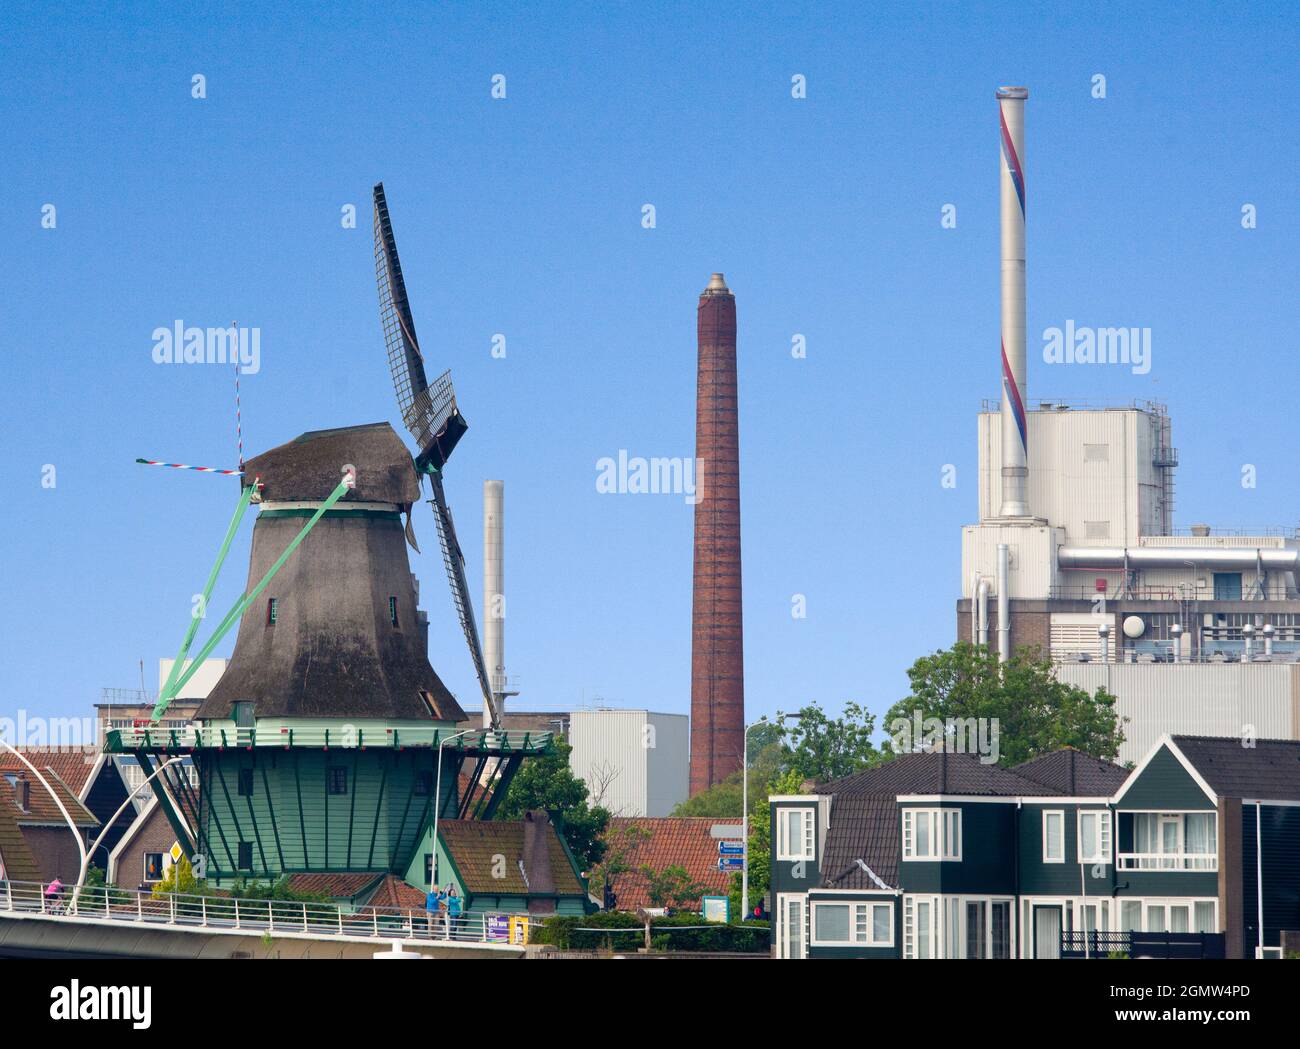 Zaanse Schans, the Netherlands - 27 May 2016  Zaanse Schans is a neighborhood of Zaandam, near Zaandijk in the Netherlands. It has a collection of wel Stock Photo